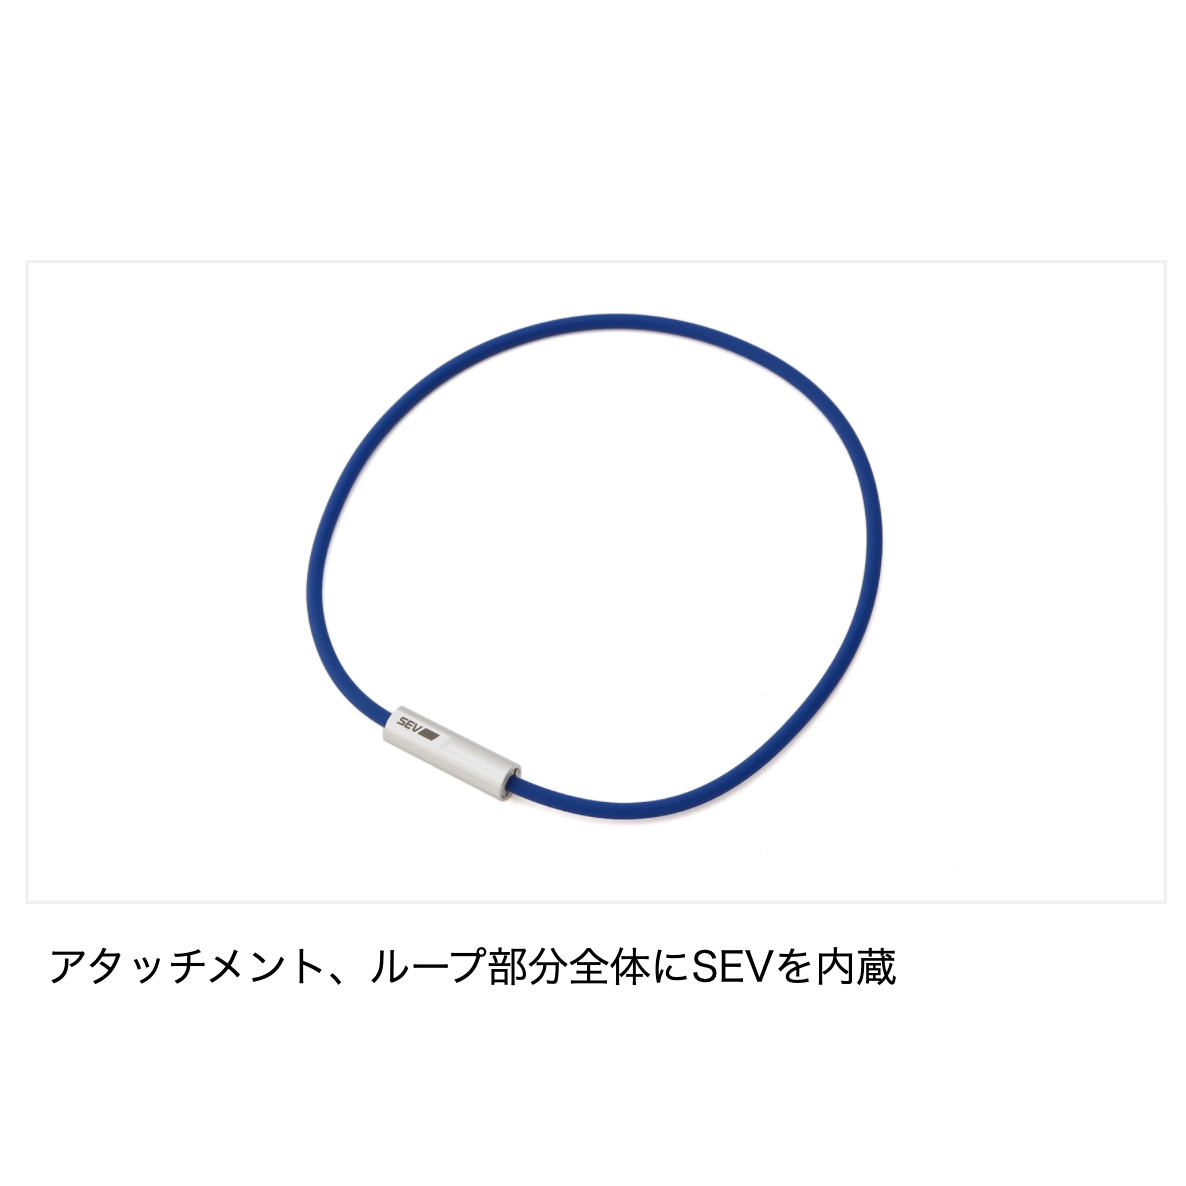 【特注】SEV セブルーパー typeM ホワイト 54cm ネックレス/首用